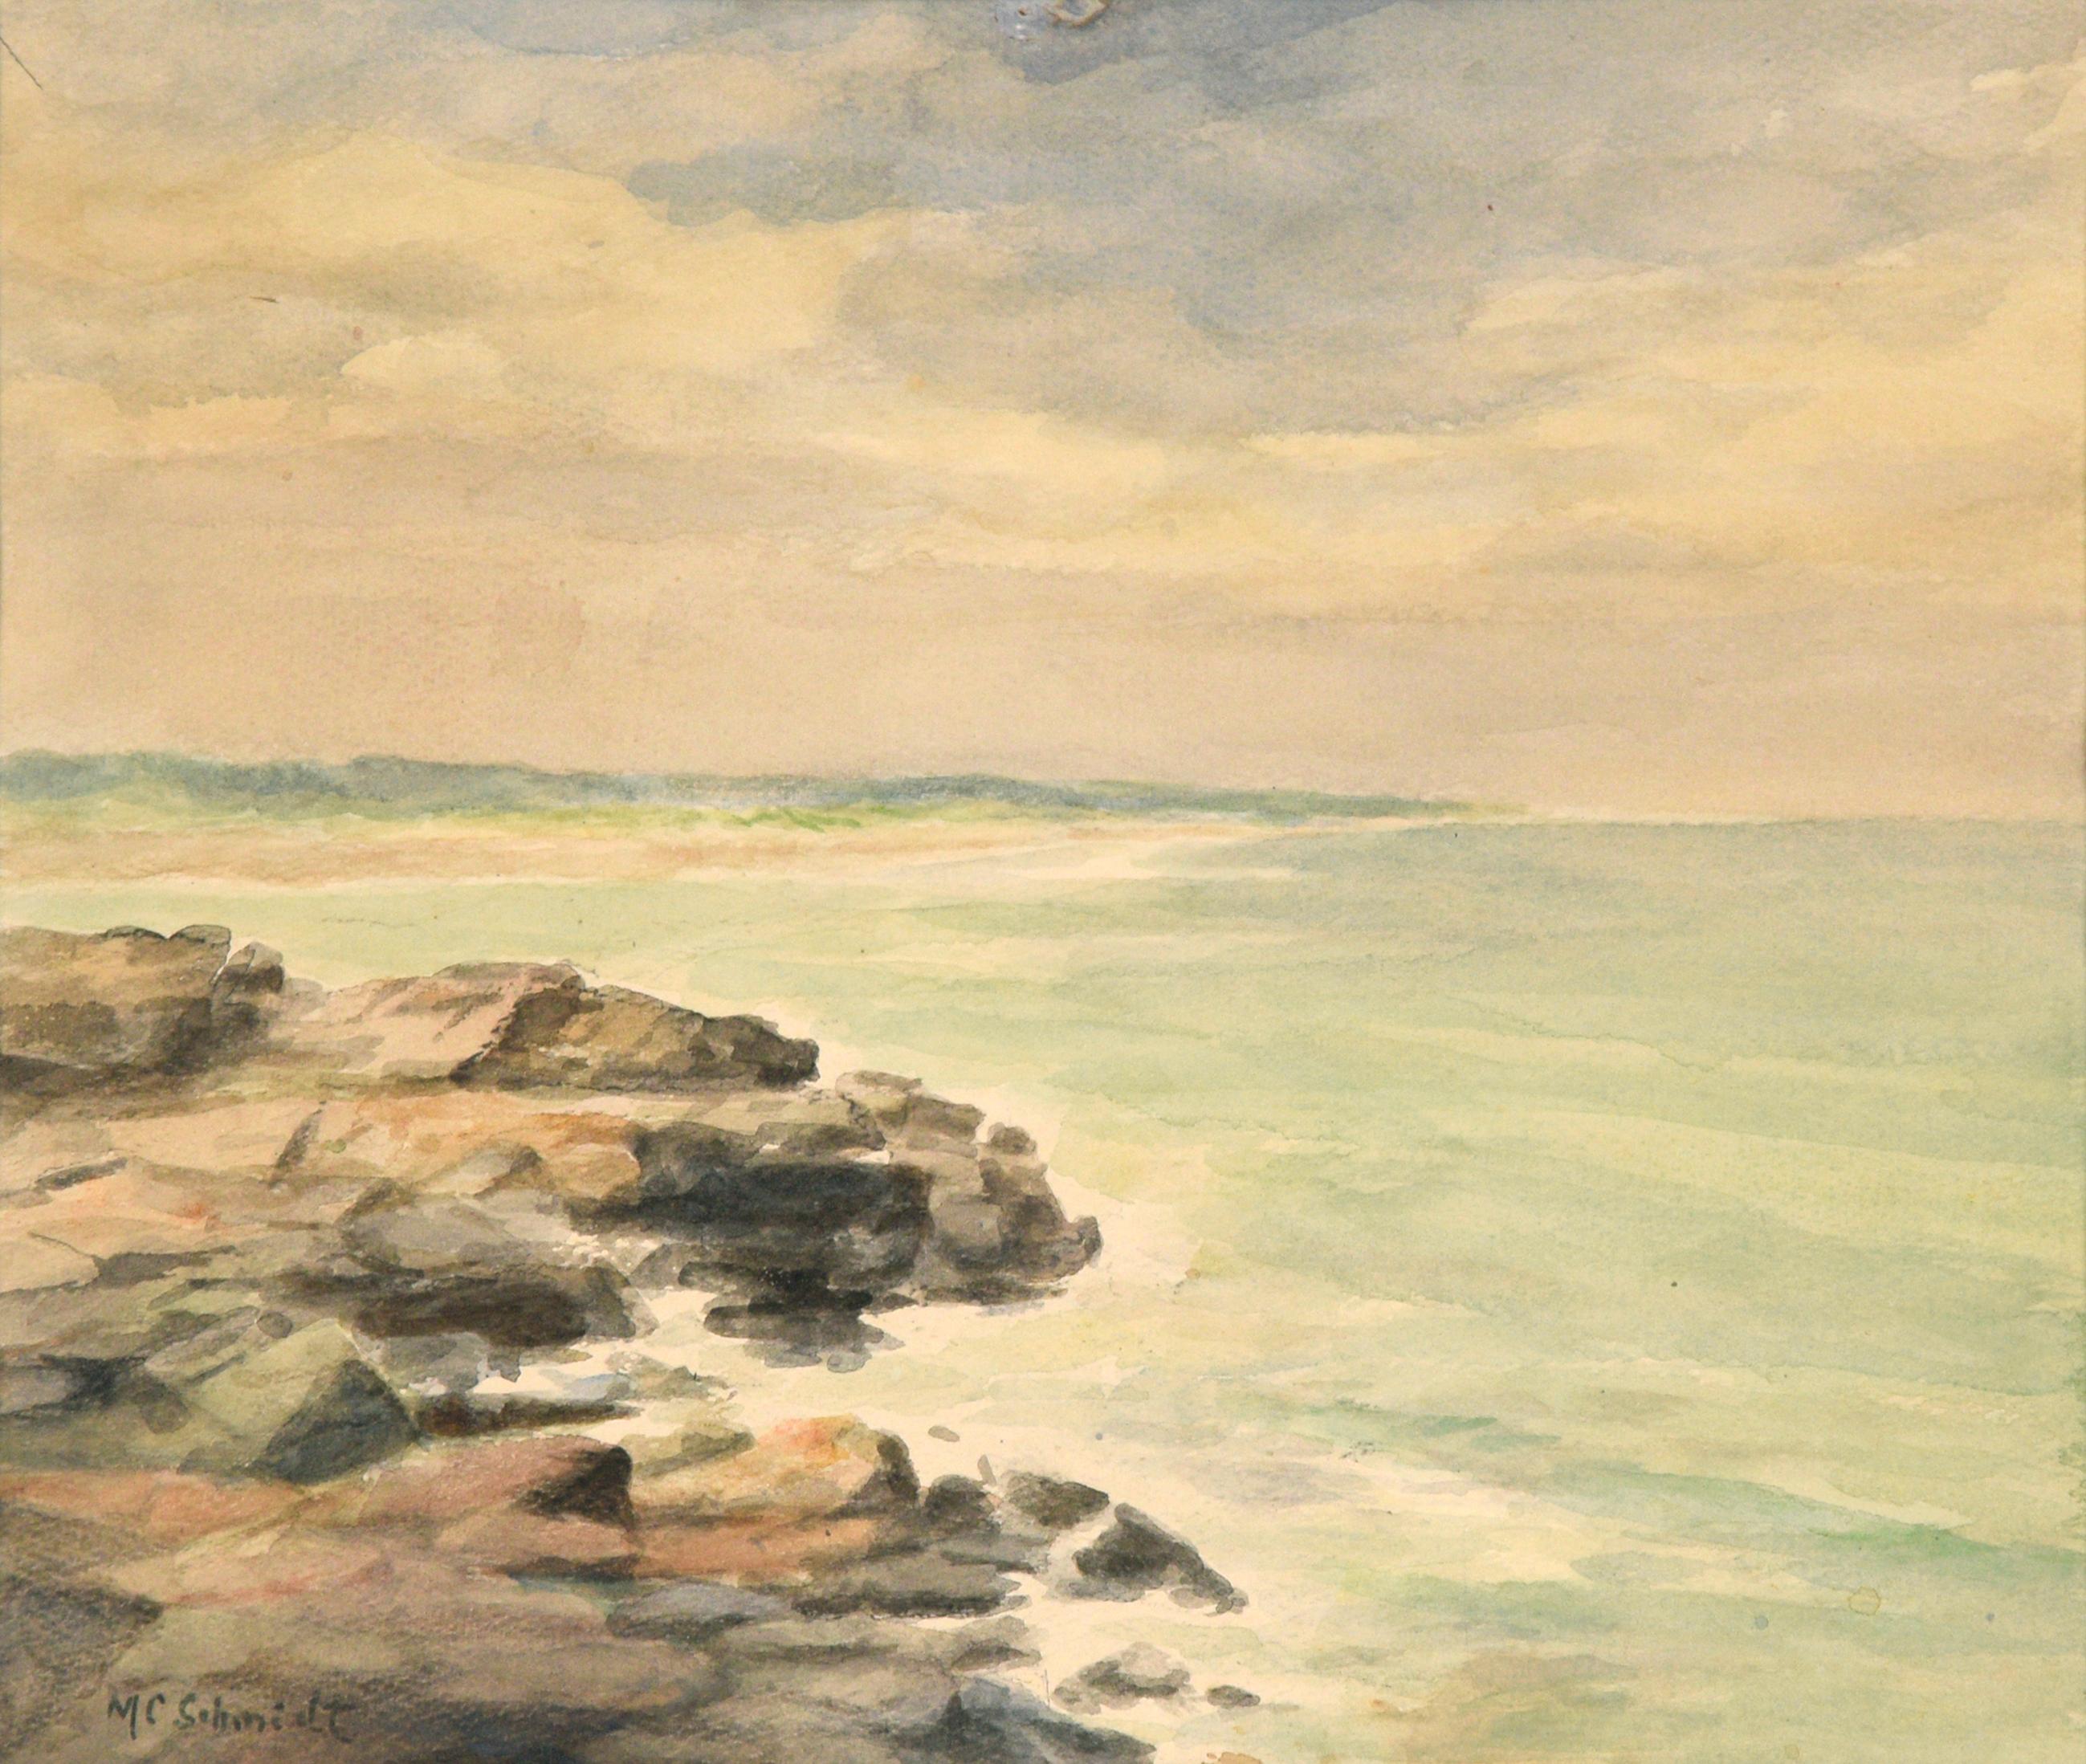 Rocky Shore, Mid Century Watercolor Seascape - Art by M. C. Schmidt